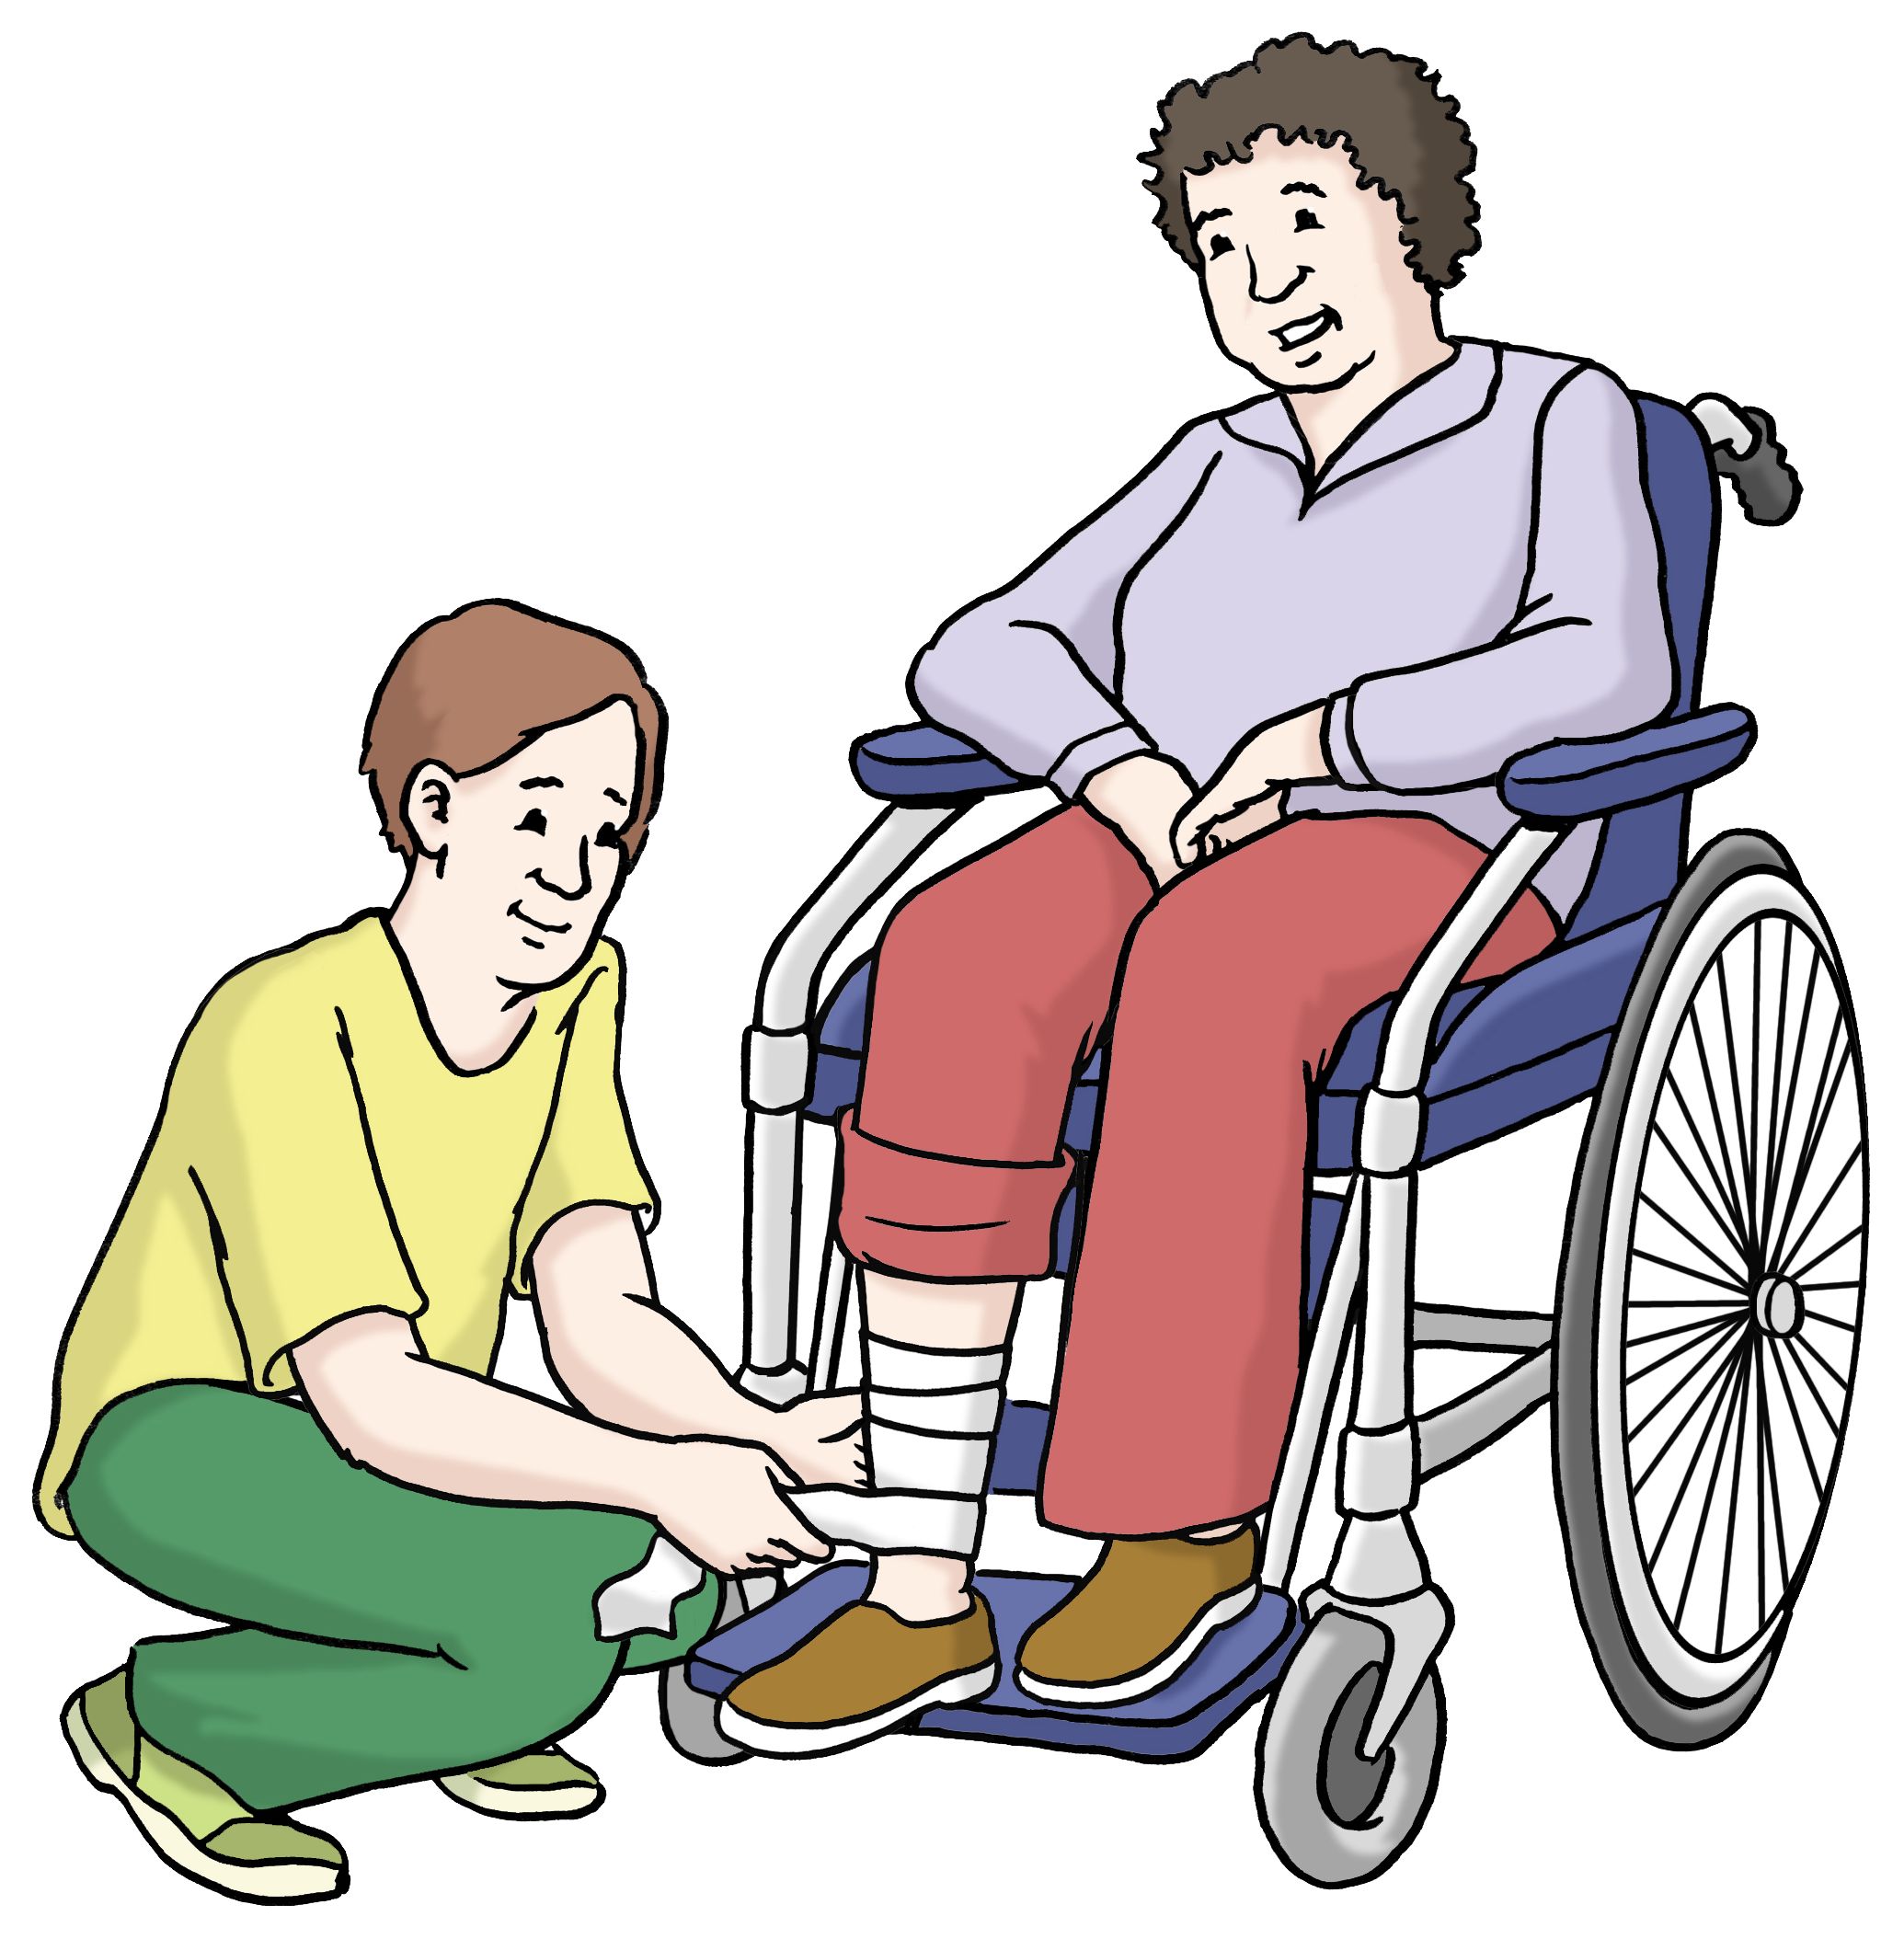 Leichte Sprache Bild: Eine Person verbindet einer Person im Rollstuhl das Bein